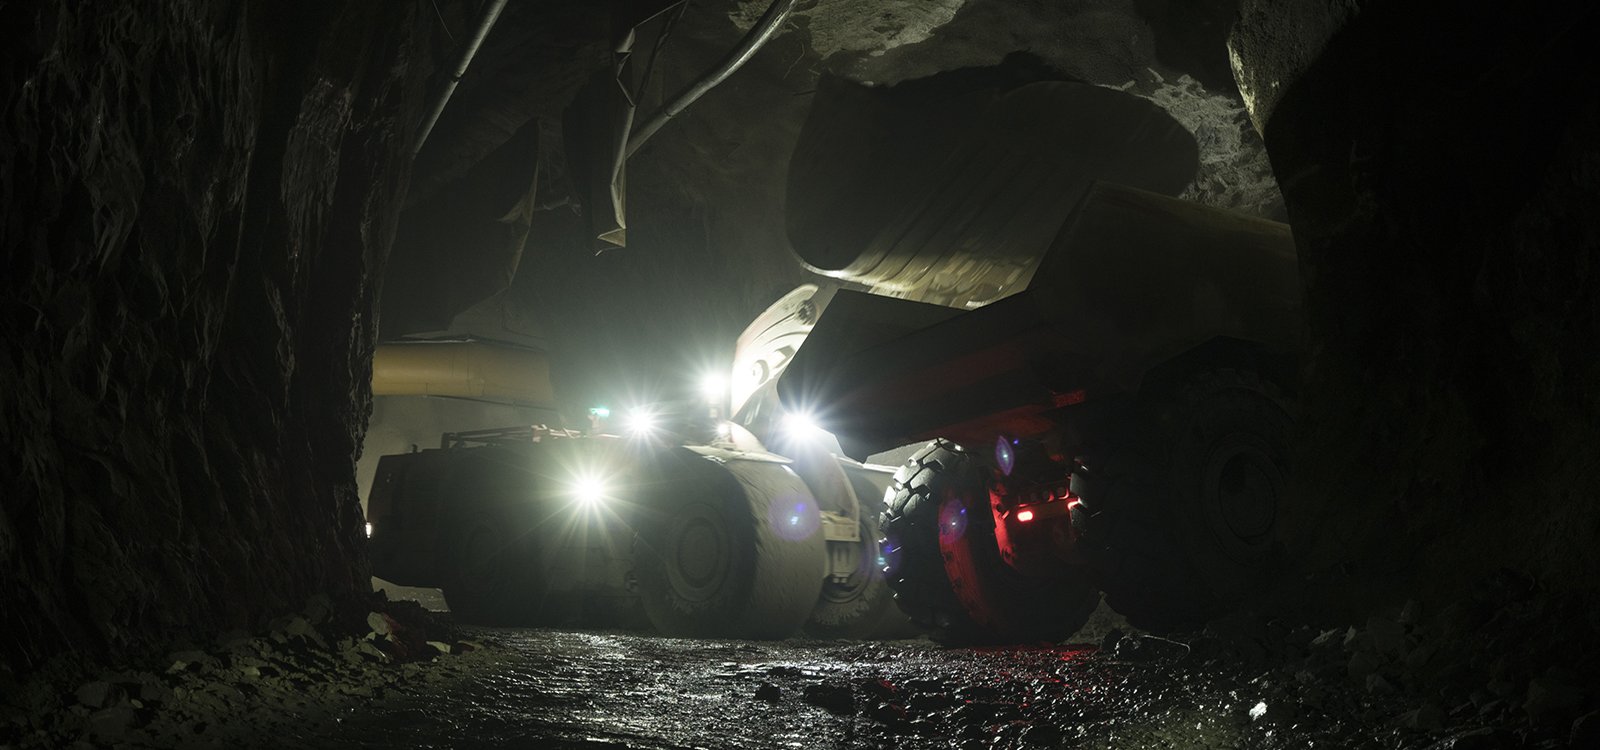 Automatyzacja pomogła zwiększyć ykorzystanie maszyn w kopalni Boliden Tara, co pozwoliło zmniejszyć inwestycje kapitałowe